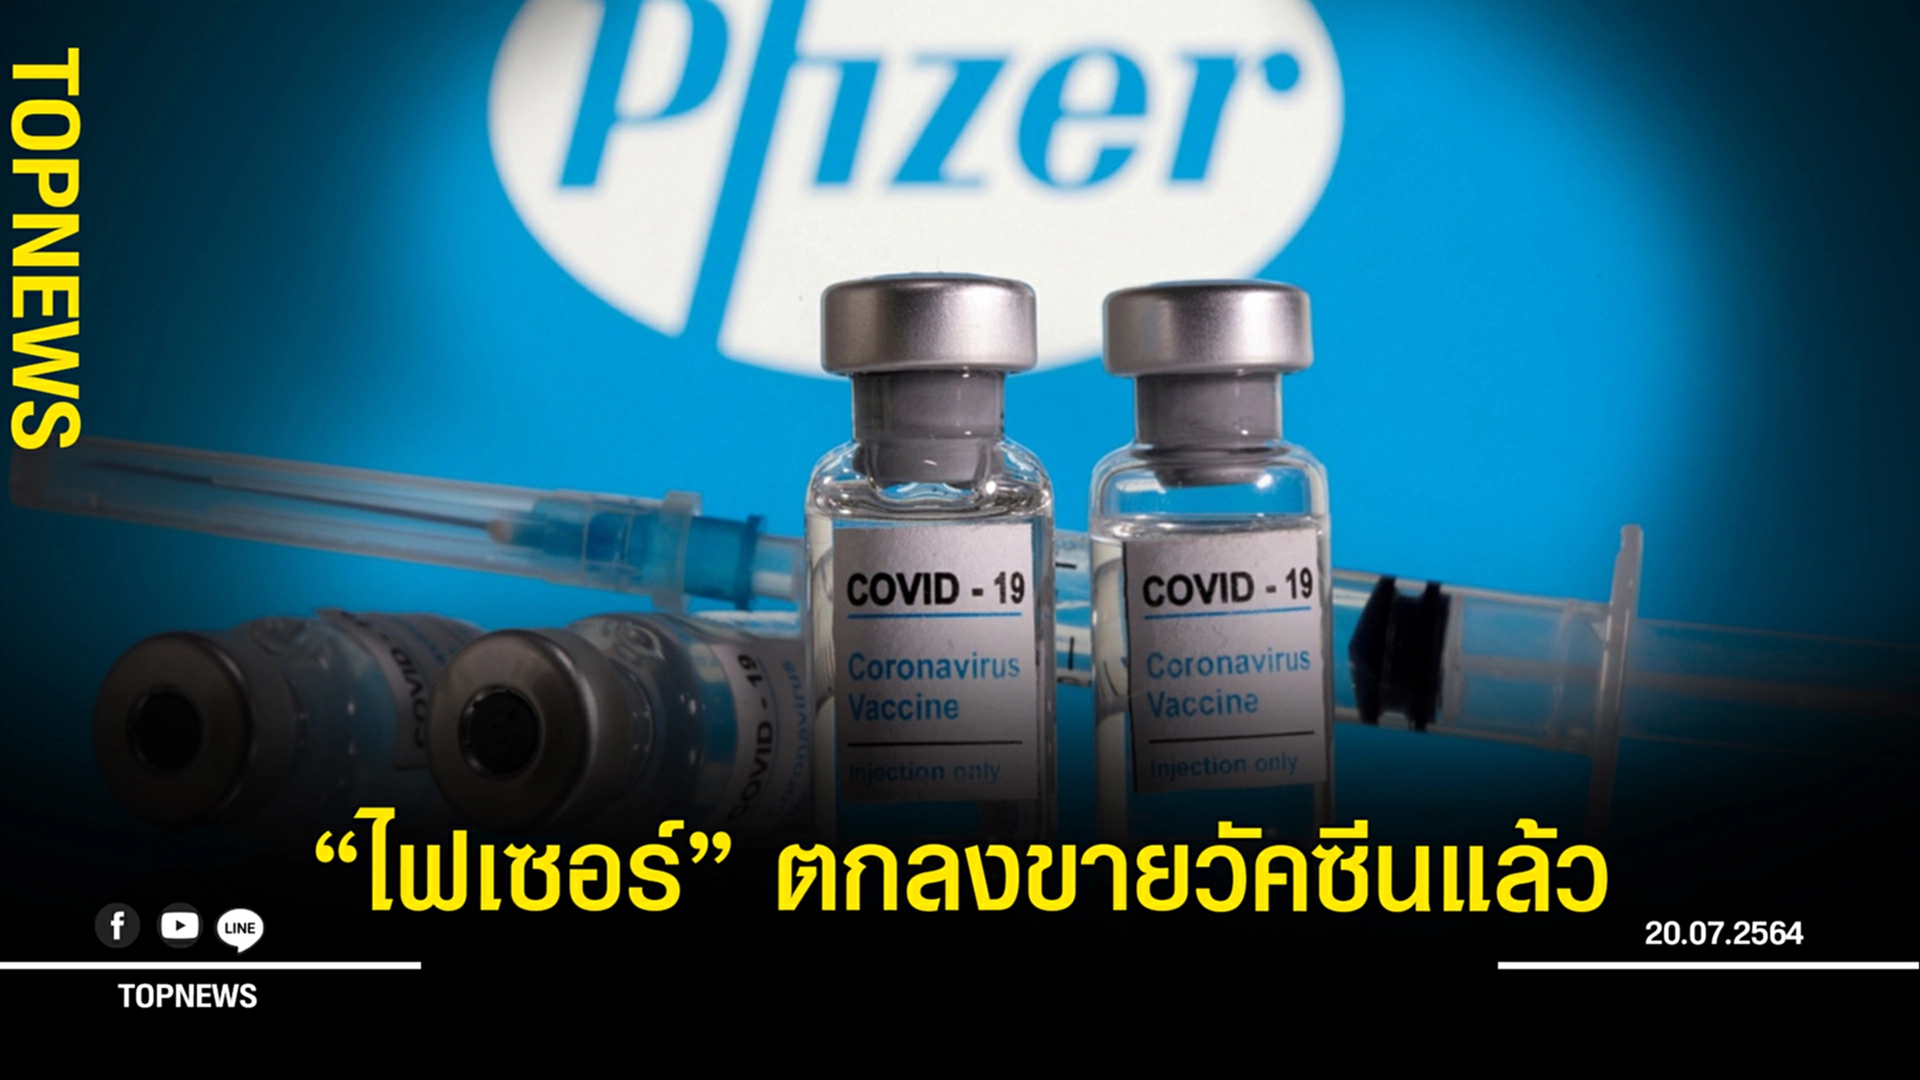 ด่วน! “ไฟเซอร์” ตกลงเซ็นสัญญาขายวัคซีนโควิดให้ไทยแล้ว 20 ล้านโดส